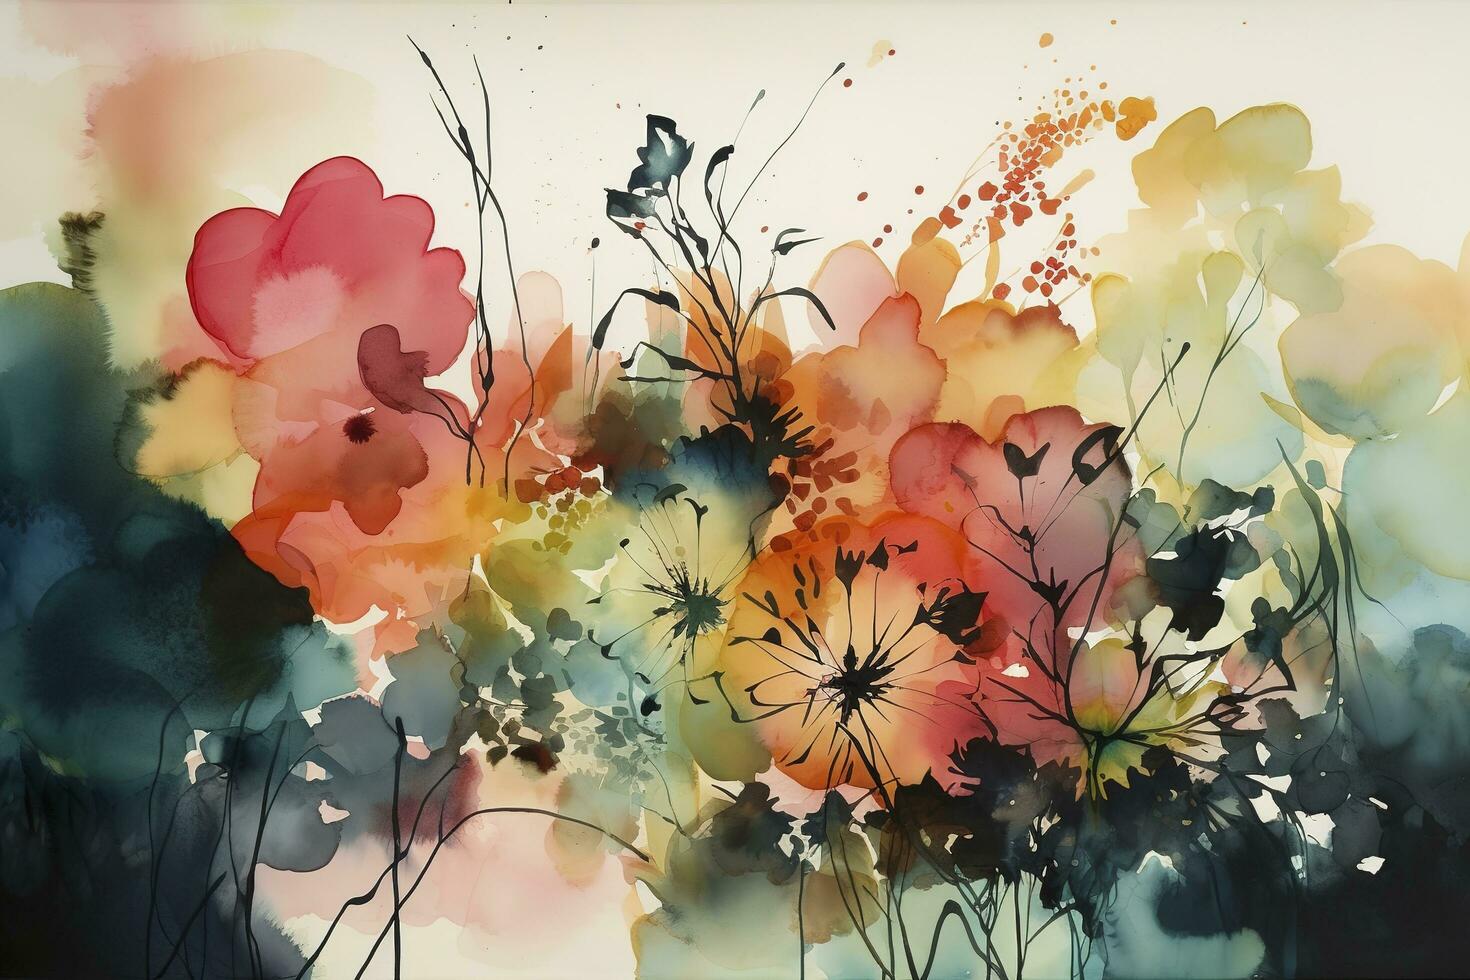 usar aguarela para crio uma Series do abstrato floral padrões, usando cor e forma para capturar a essência do flores sem representando eles realisticamente, gerar ai foto